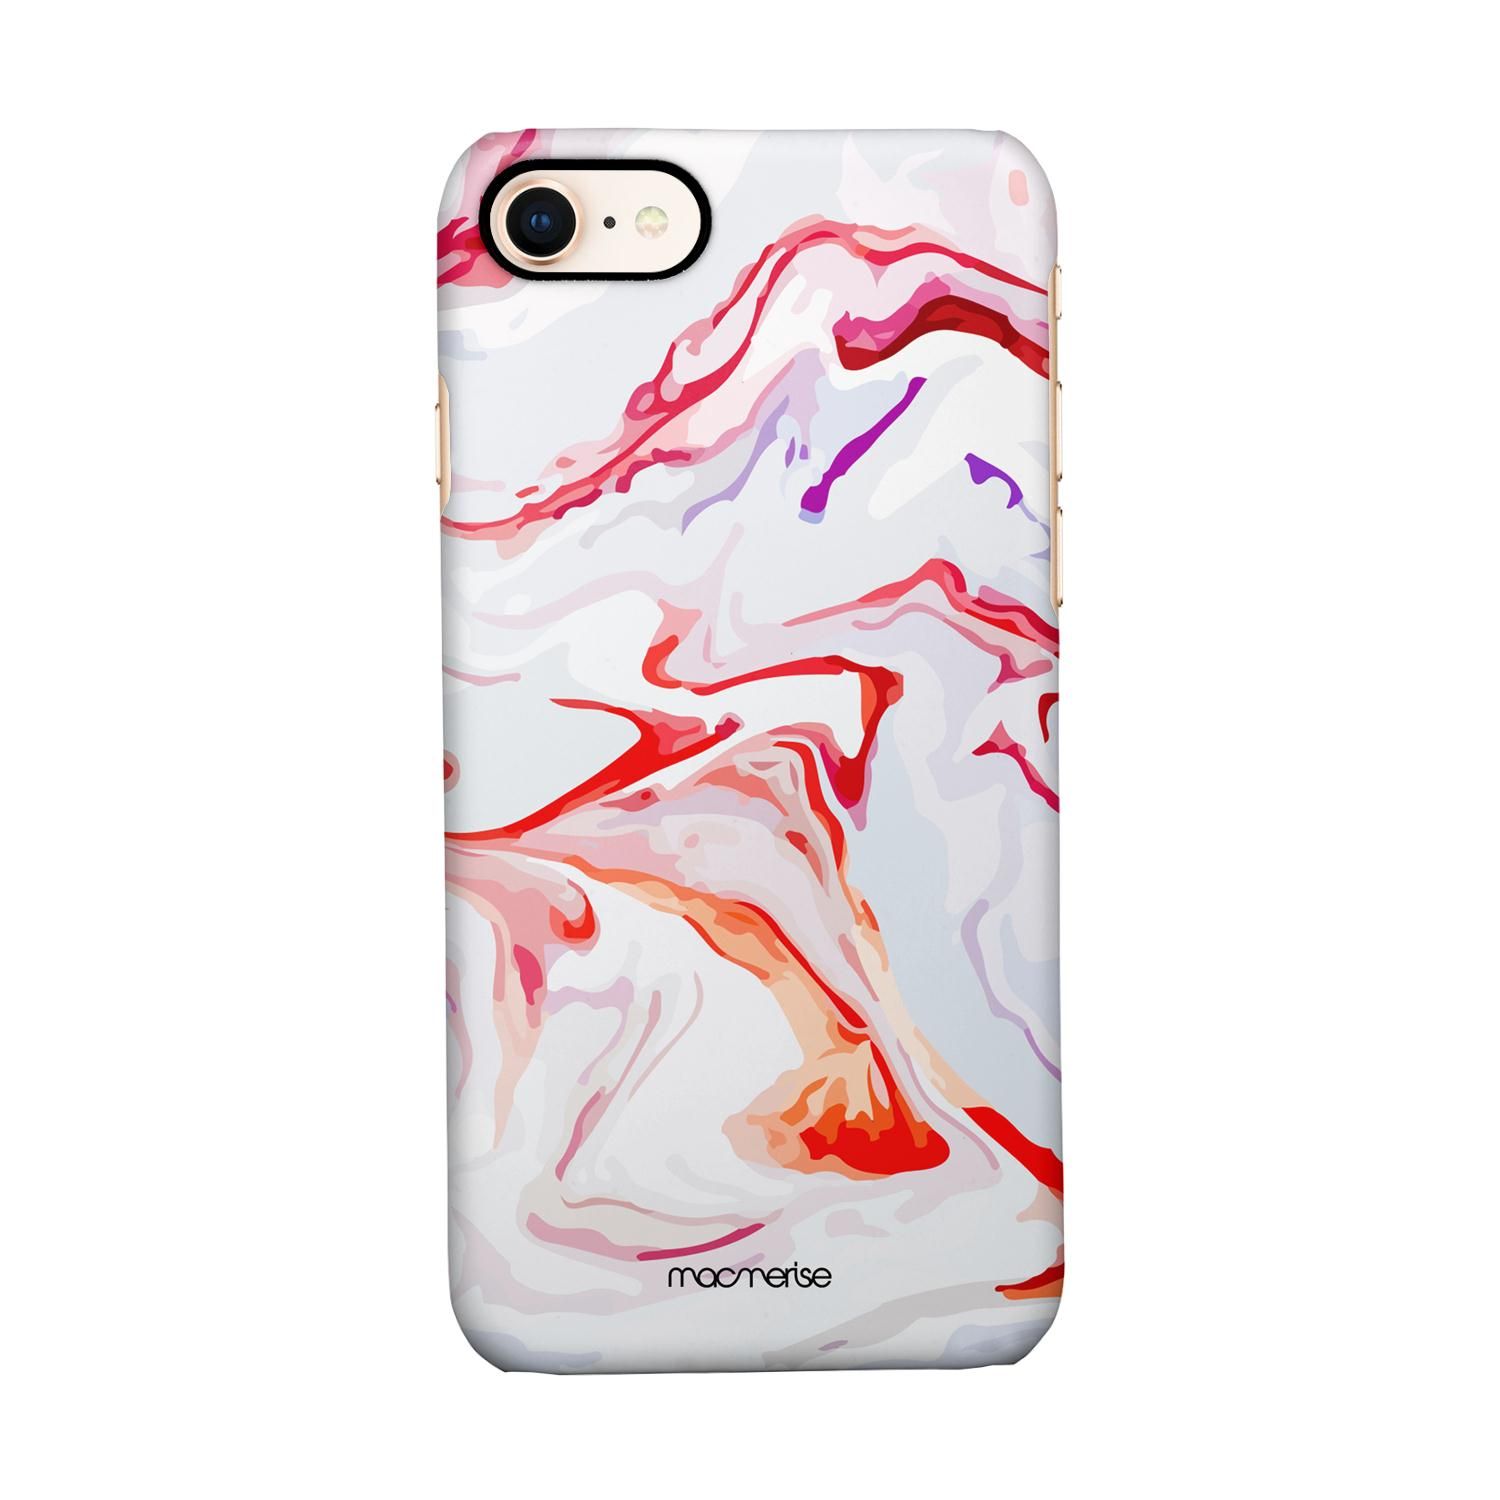 Buy Liquid Funk Marble - Sleek Phone Case for iPhone 8 Online